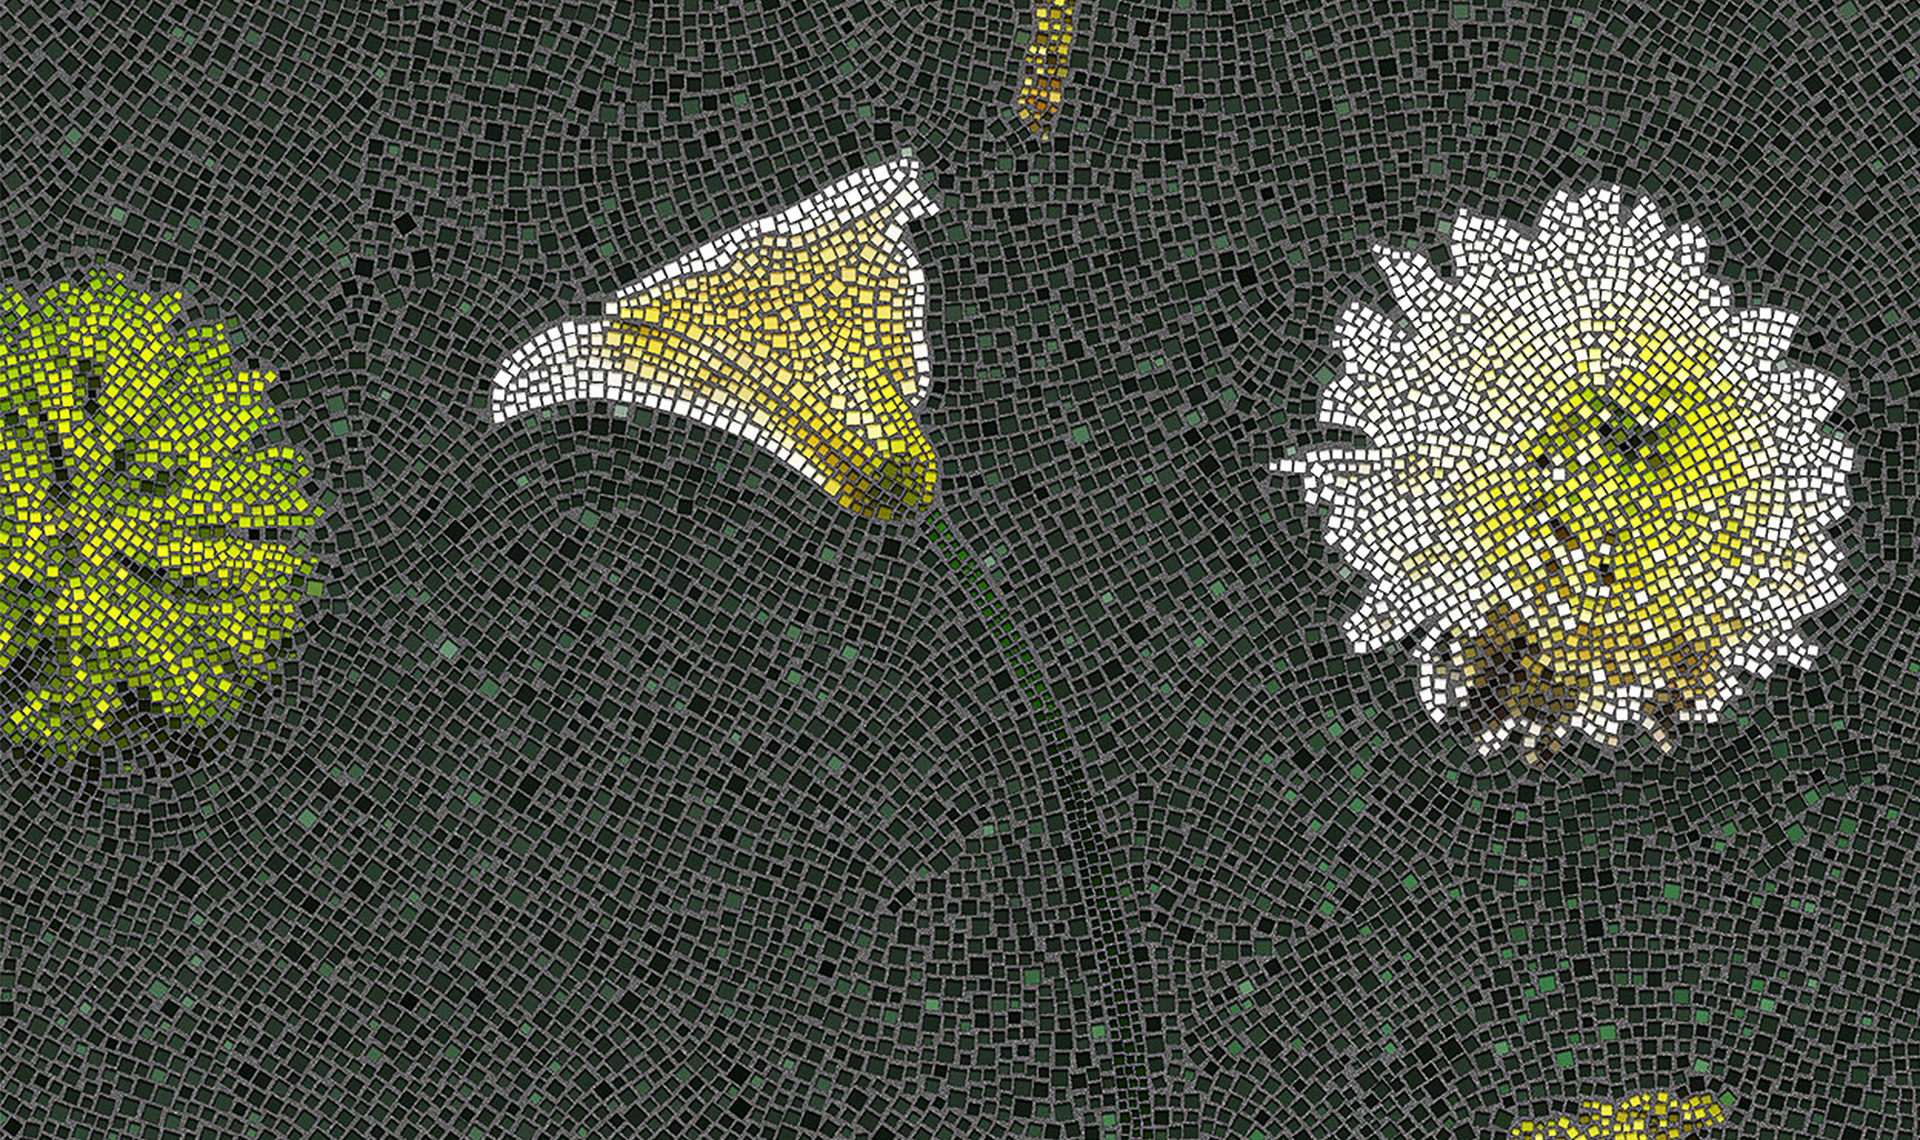 Цветочная мозаика флориста Дилана Триппа